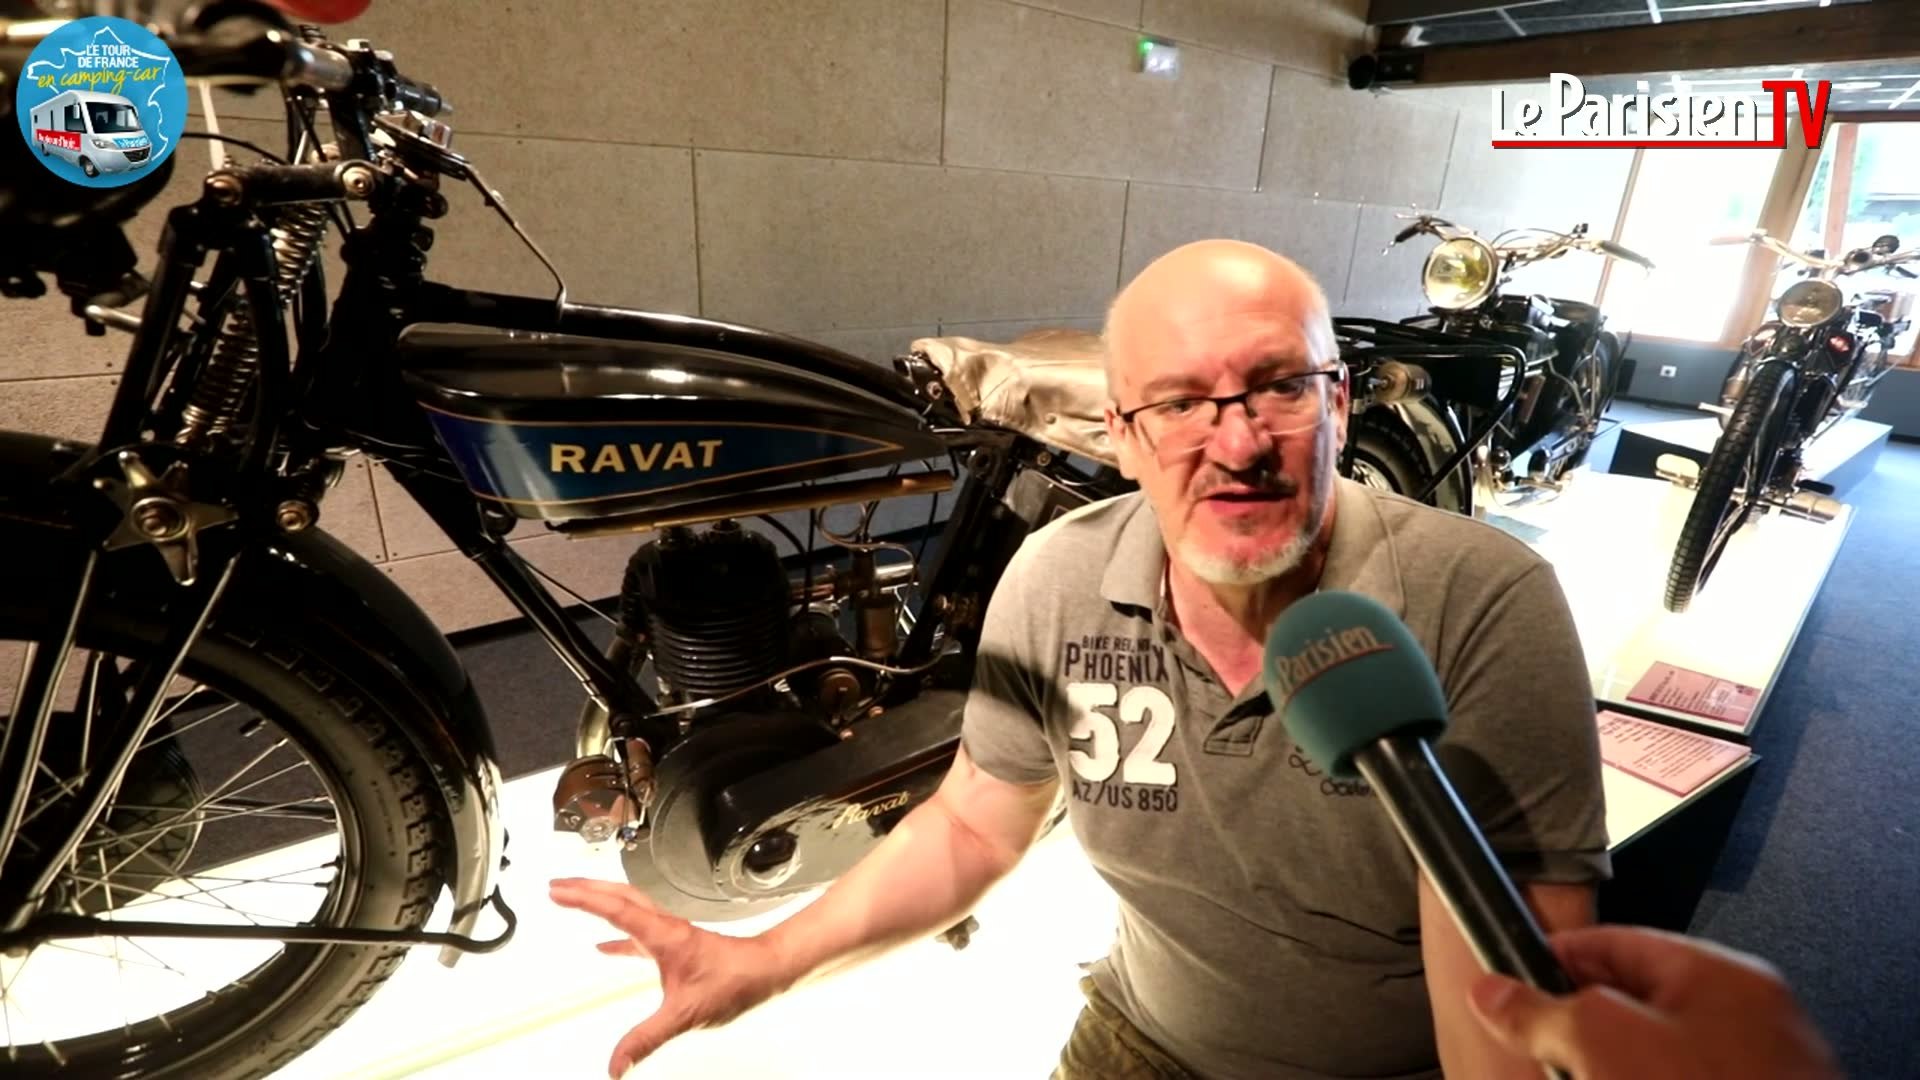 La collection exceptionnelle des motos Ravat au musée « La Grange à Bécanes  ». - Vidéo Dailymotion